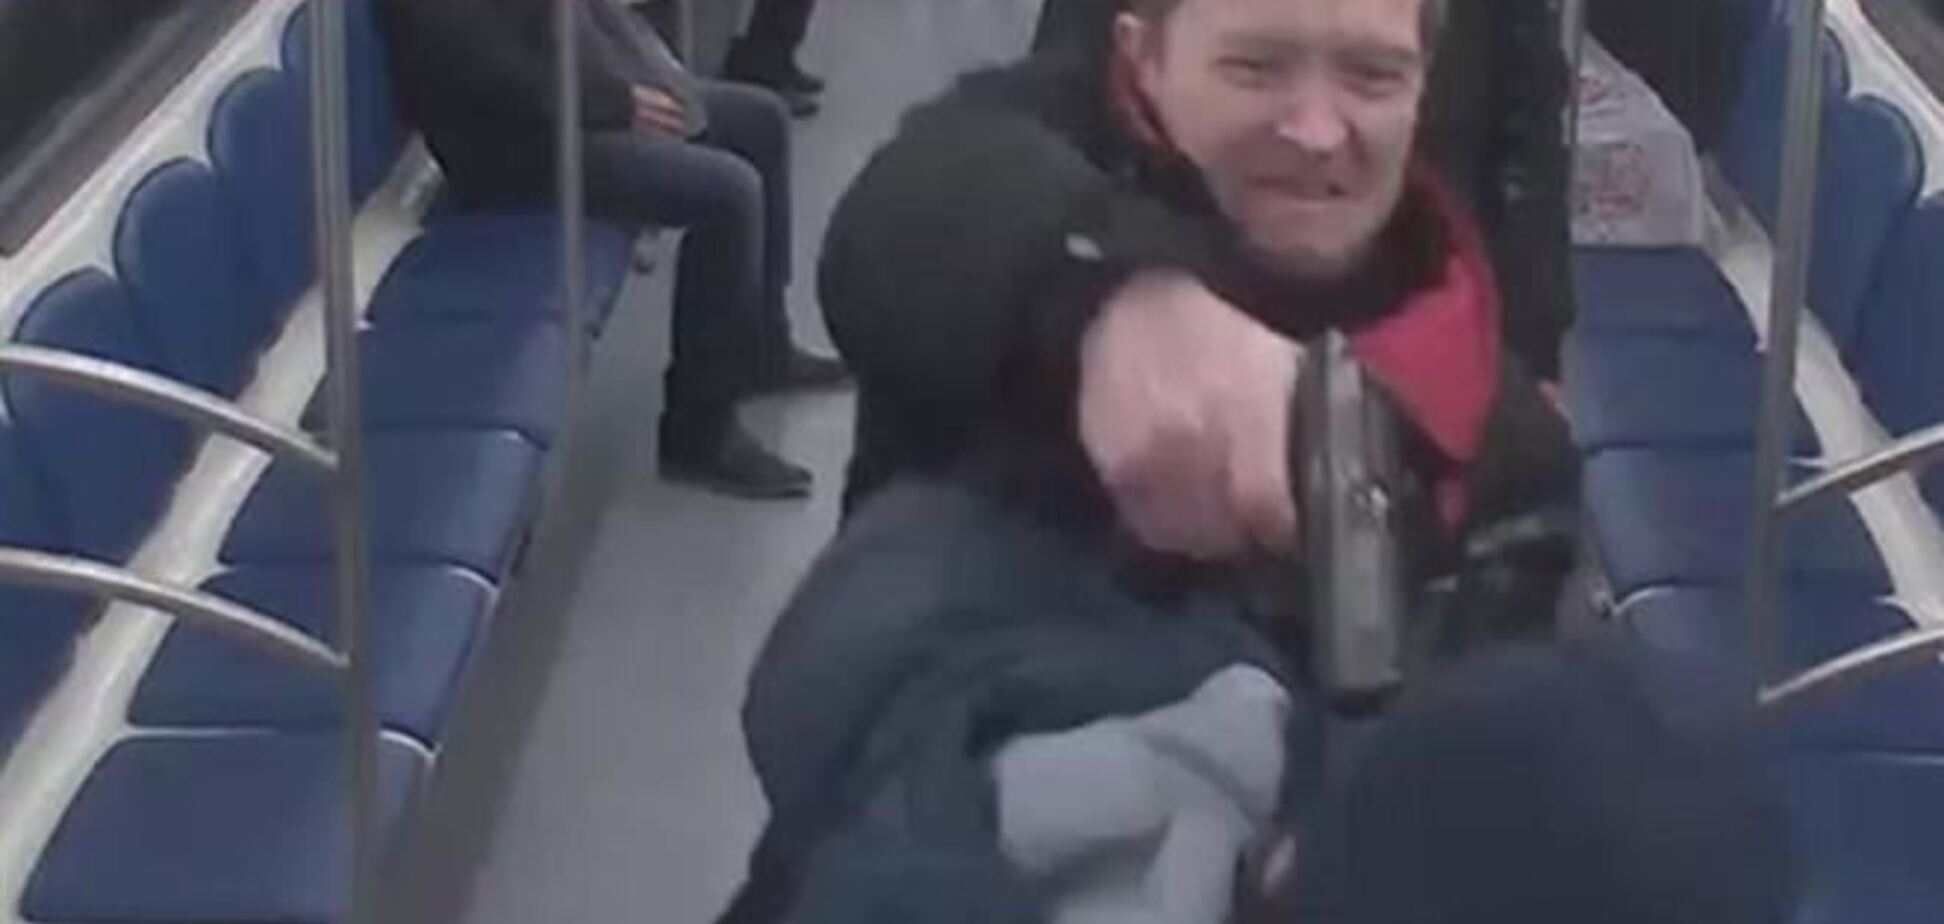 В московском метро расстреляли пассажира